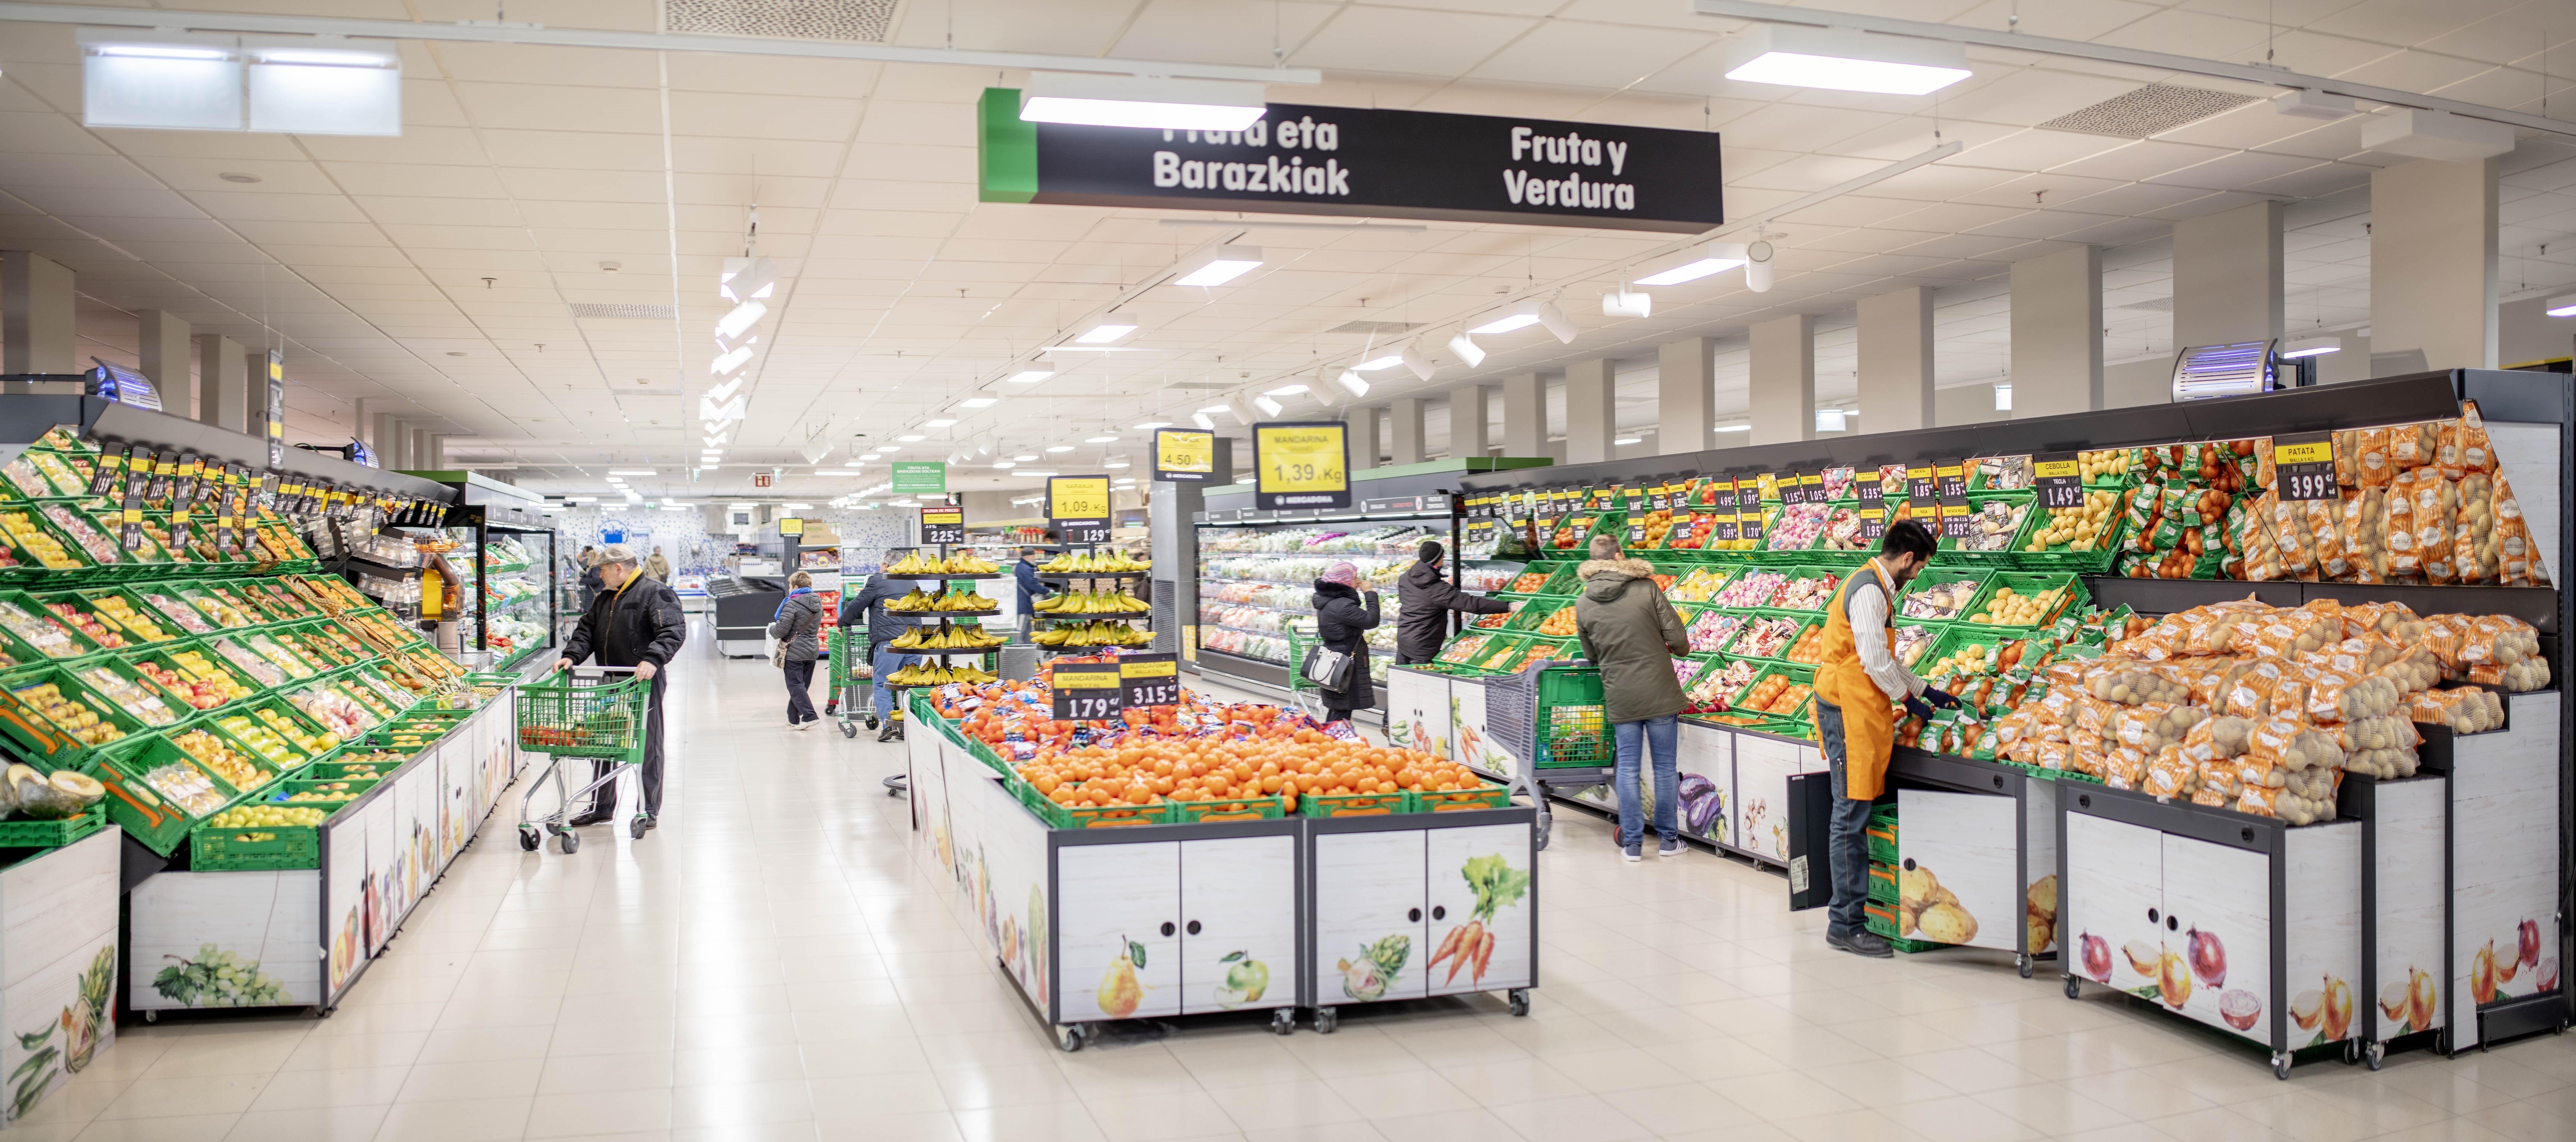 Horarios de los supermercados en España en el puente que comienza el 1 de mayo, Día de los Trabajadores